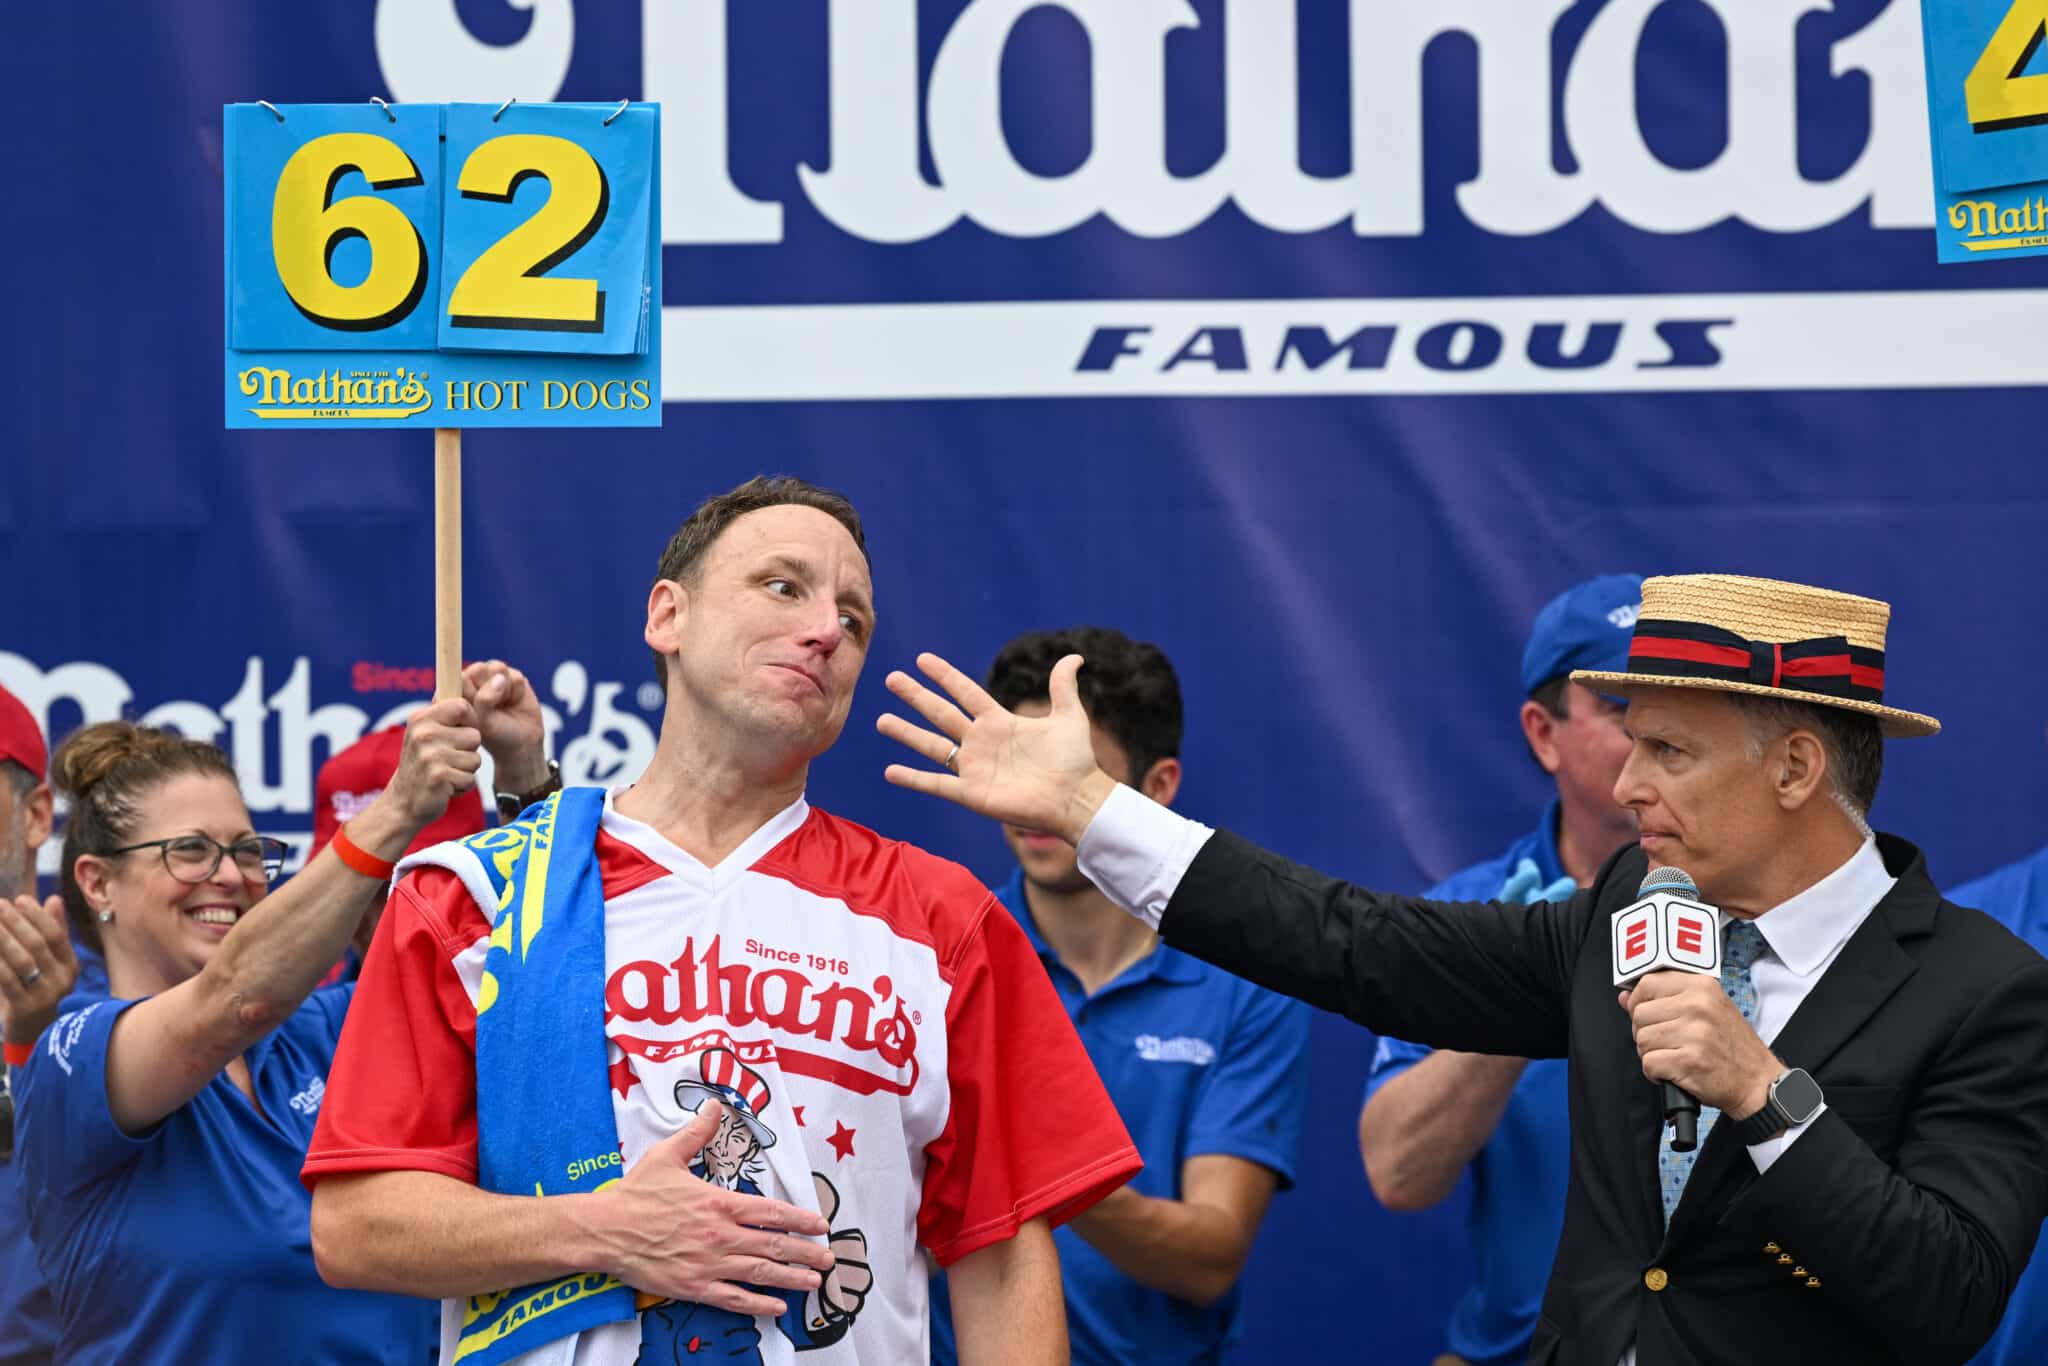 Joey Chestnut amerikai versenyevő áll baloldalt a verseny színhelyén, jobboldalt a műsorvezető